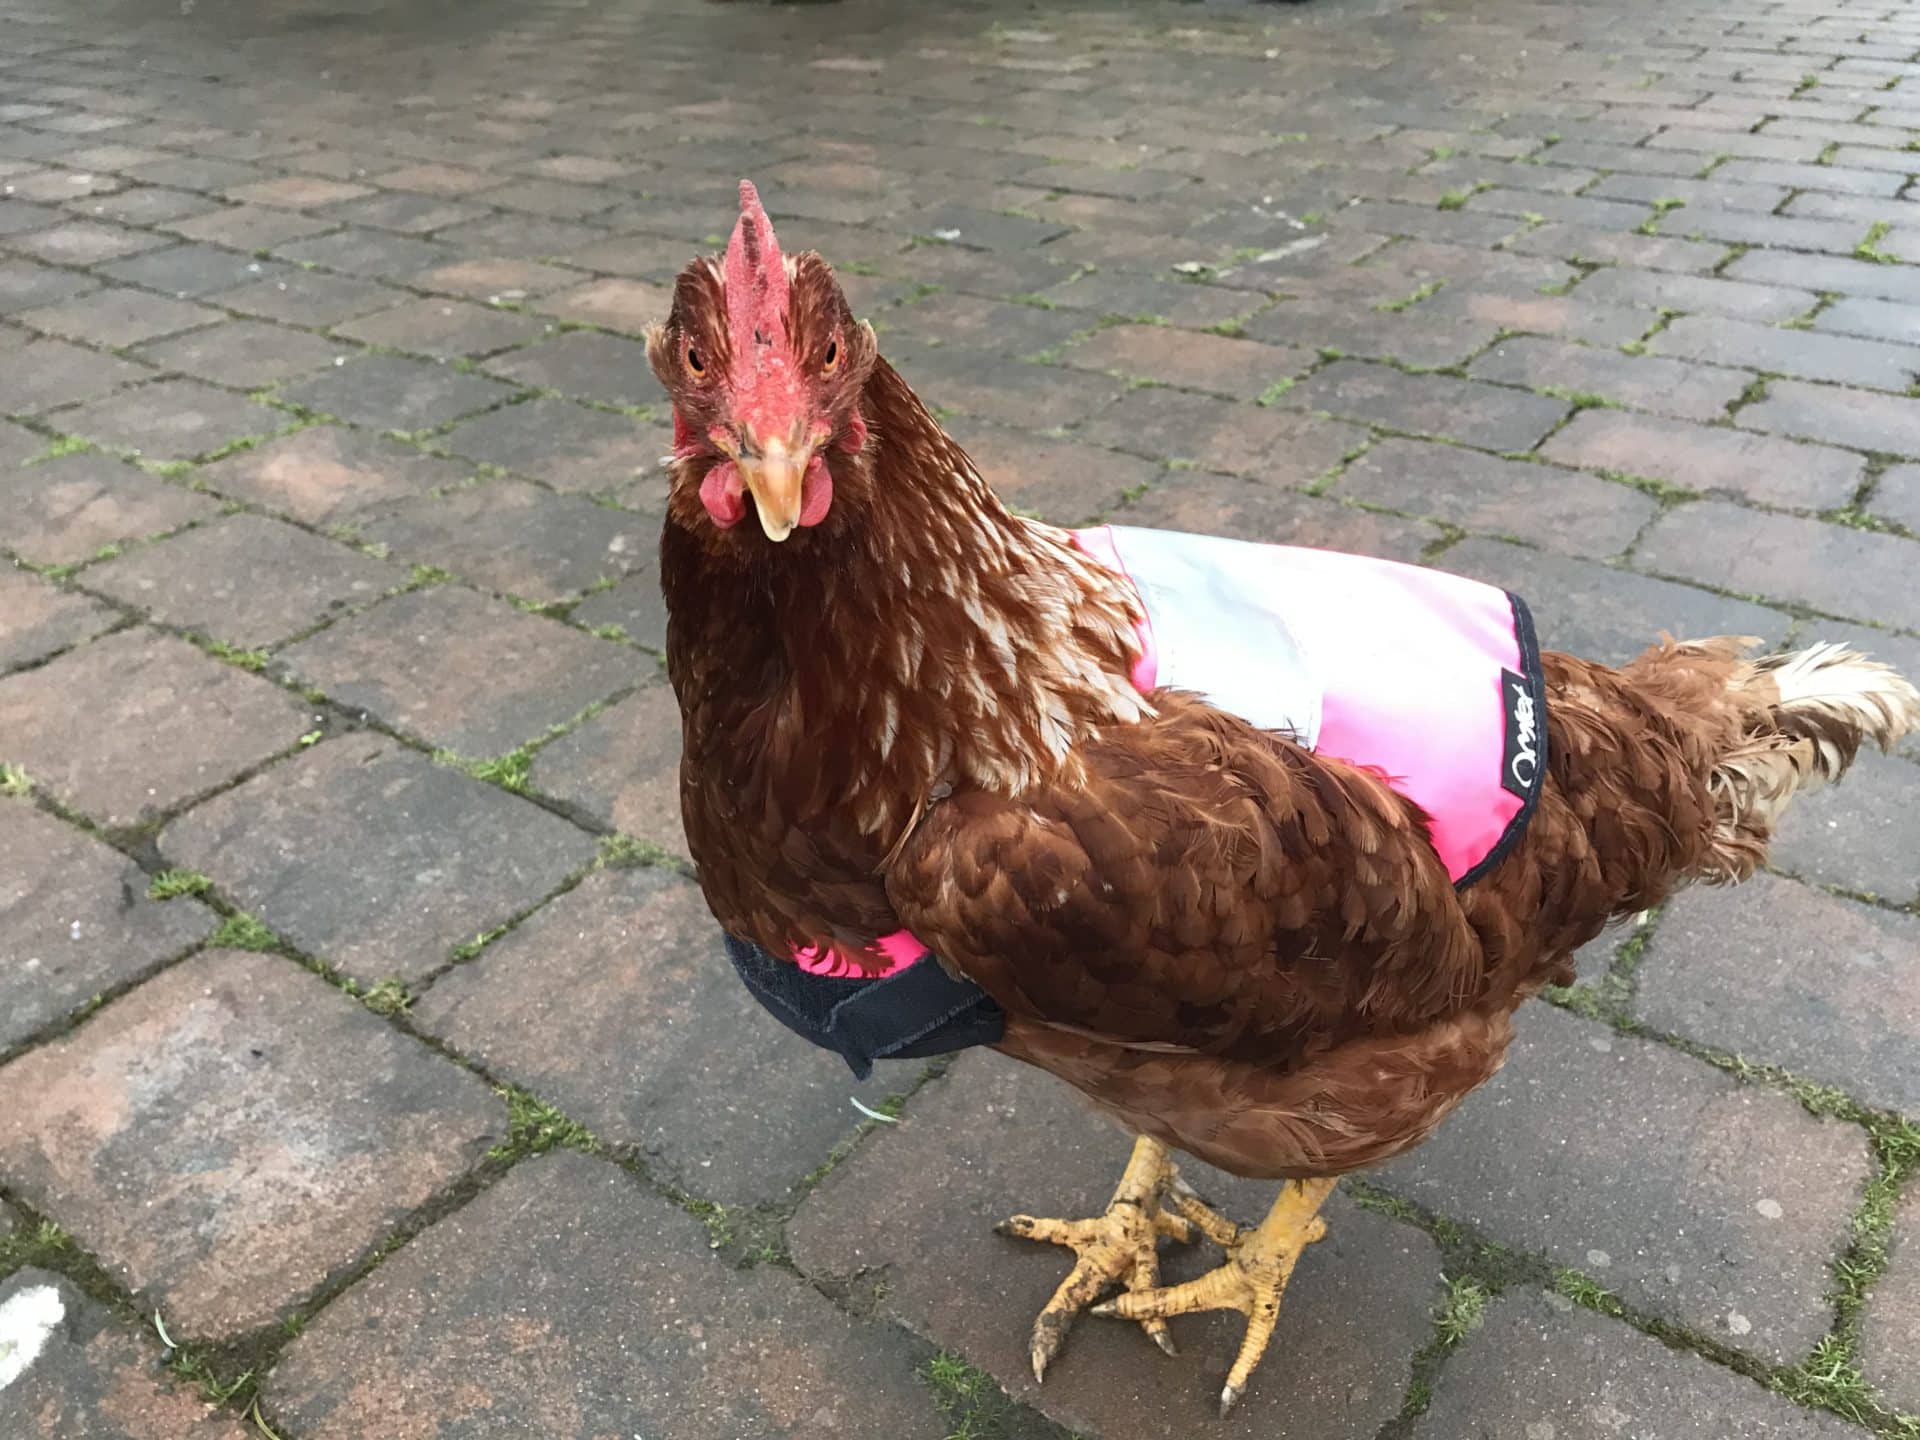 Hühner tragen leuchtende Warnwesten – aus gutem Grund